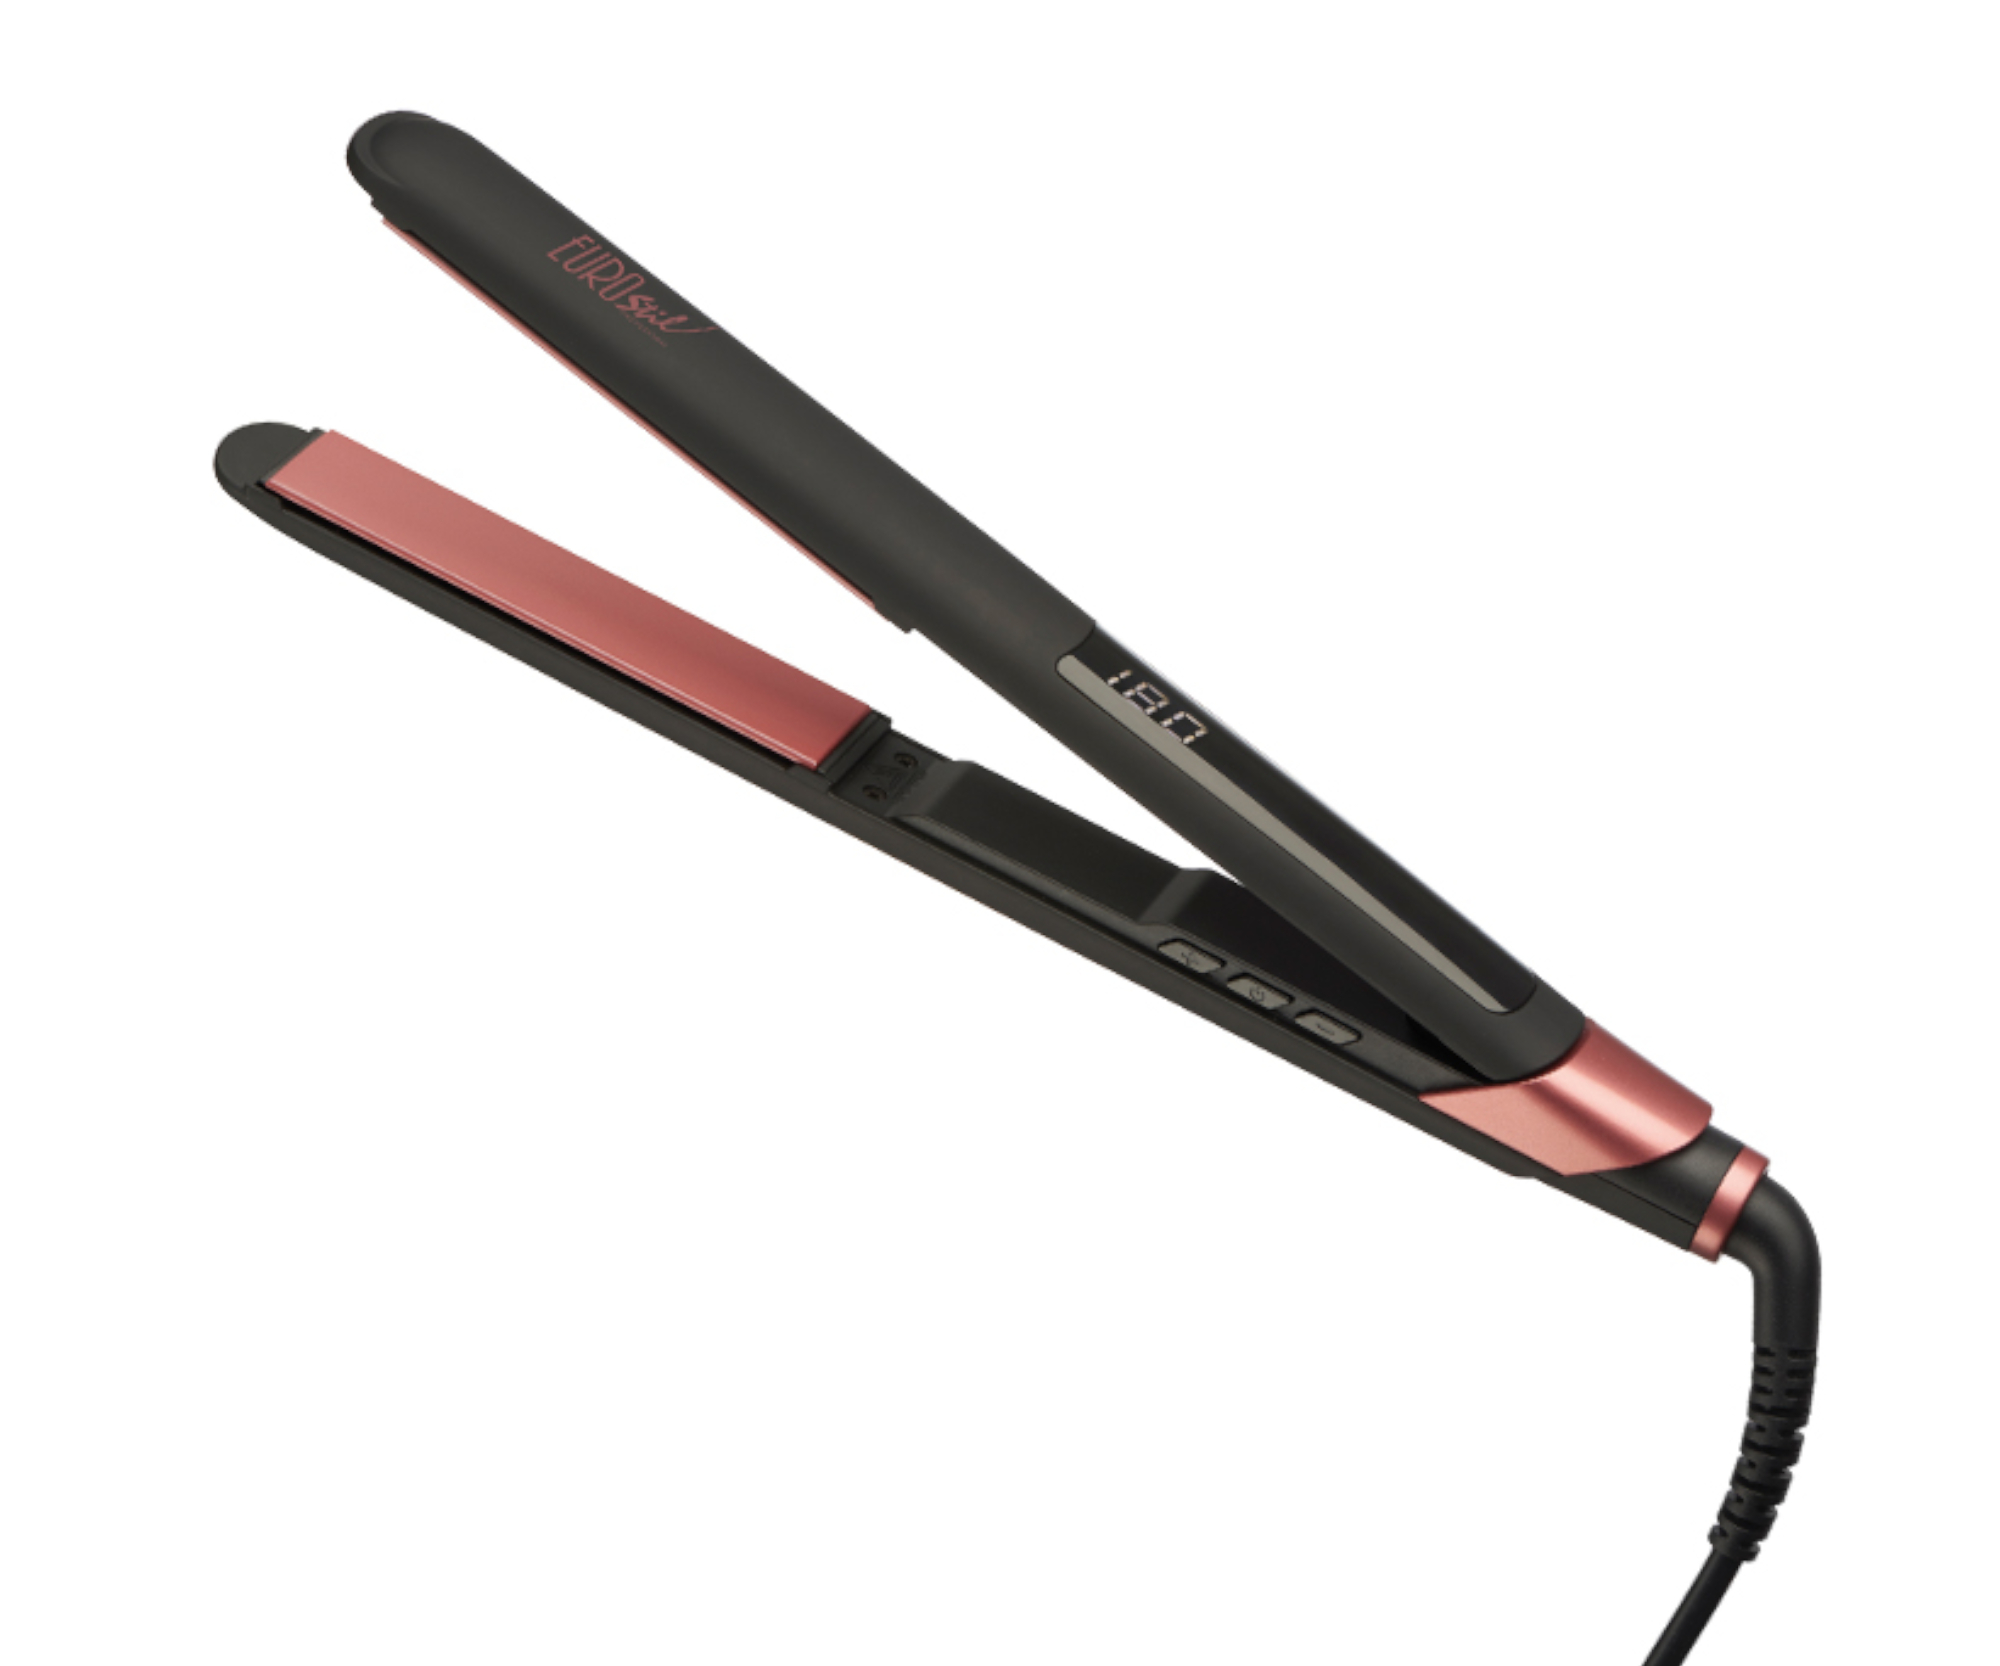 Profesionální žehlička na vlasy Eurostil Profesional Advance Pink 06139/70 - černo-růžová + dárek zdarma